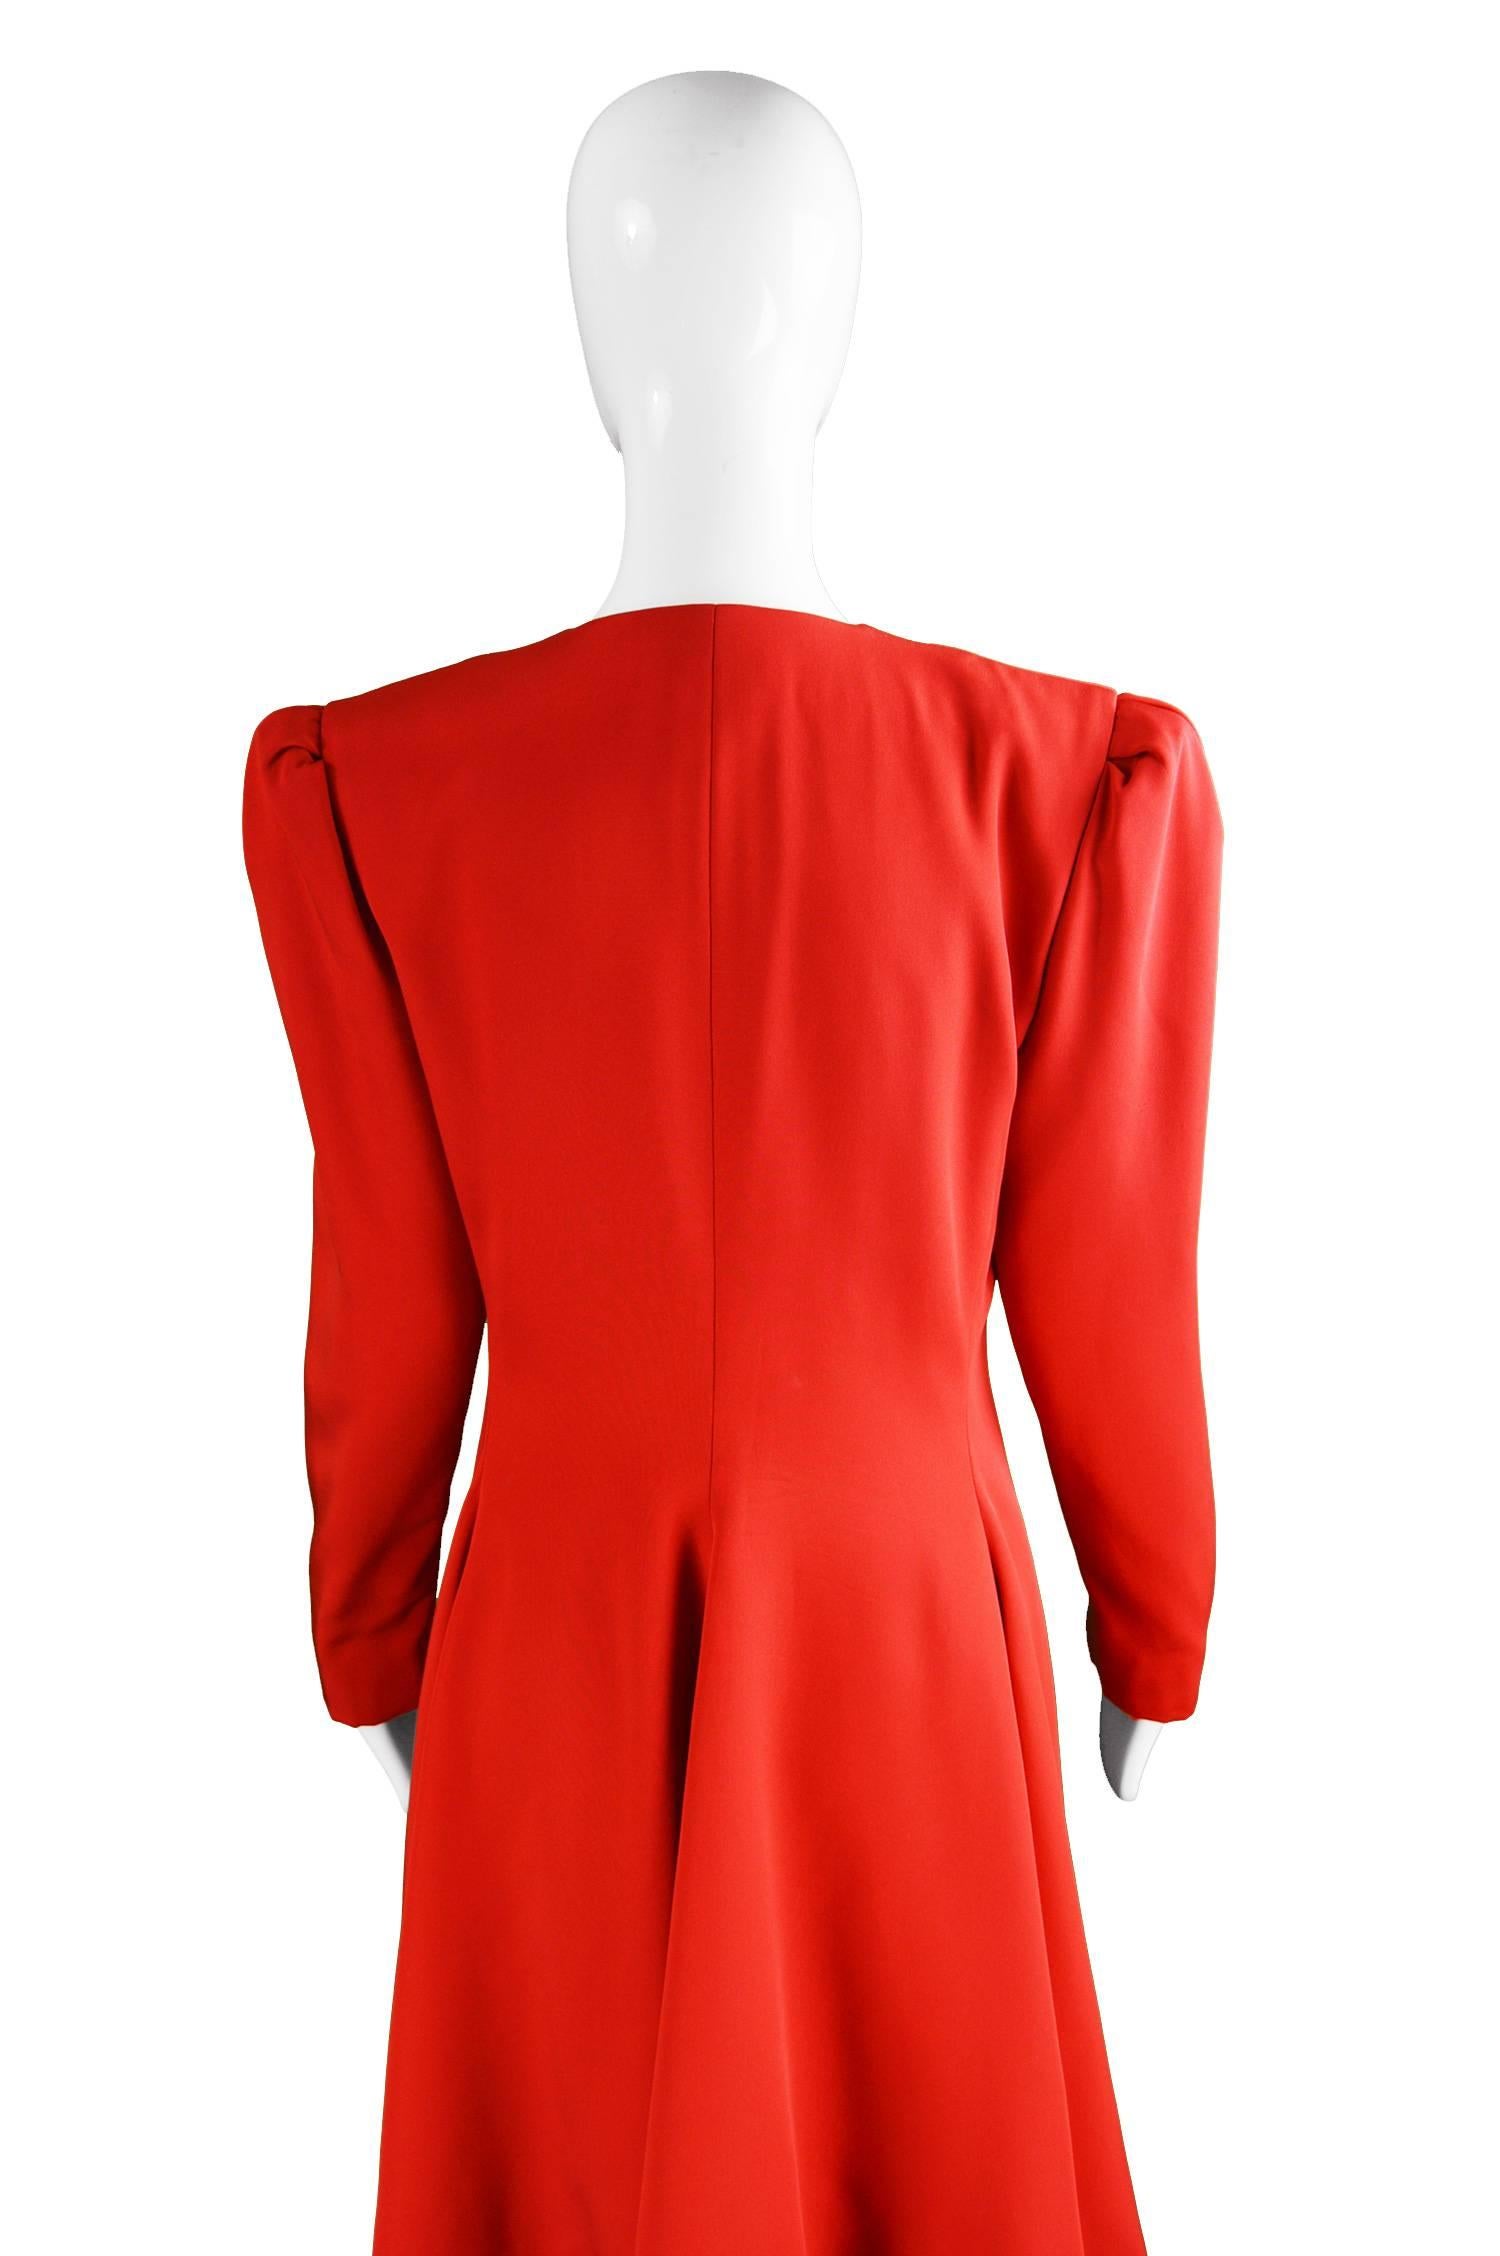 Carolina Herrera For Neiman Marcus Red Silk Full Skirt Evening Coat, 1980s 3